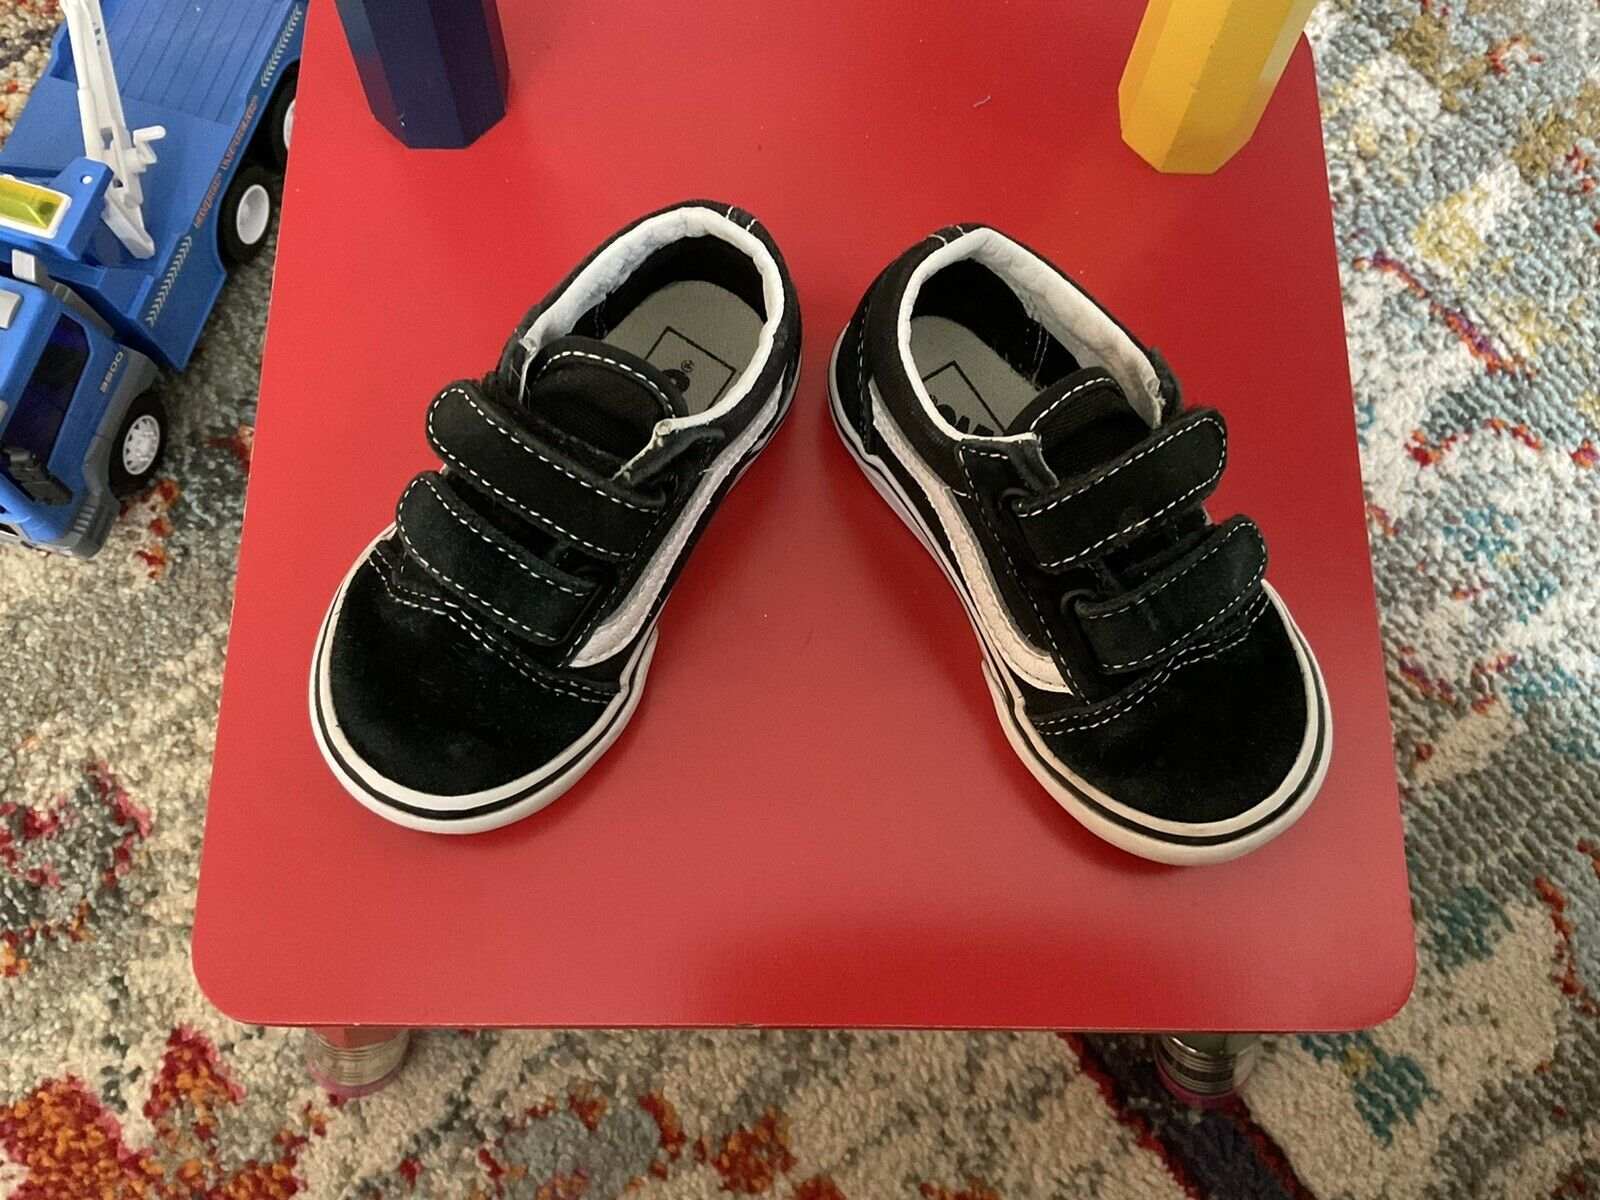 EUC Vans shoes toddler Sz 6/Old Skool black and white Suede canvas, hook/loop